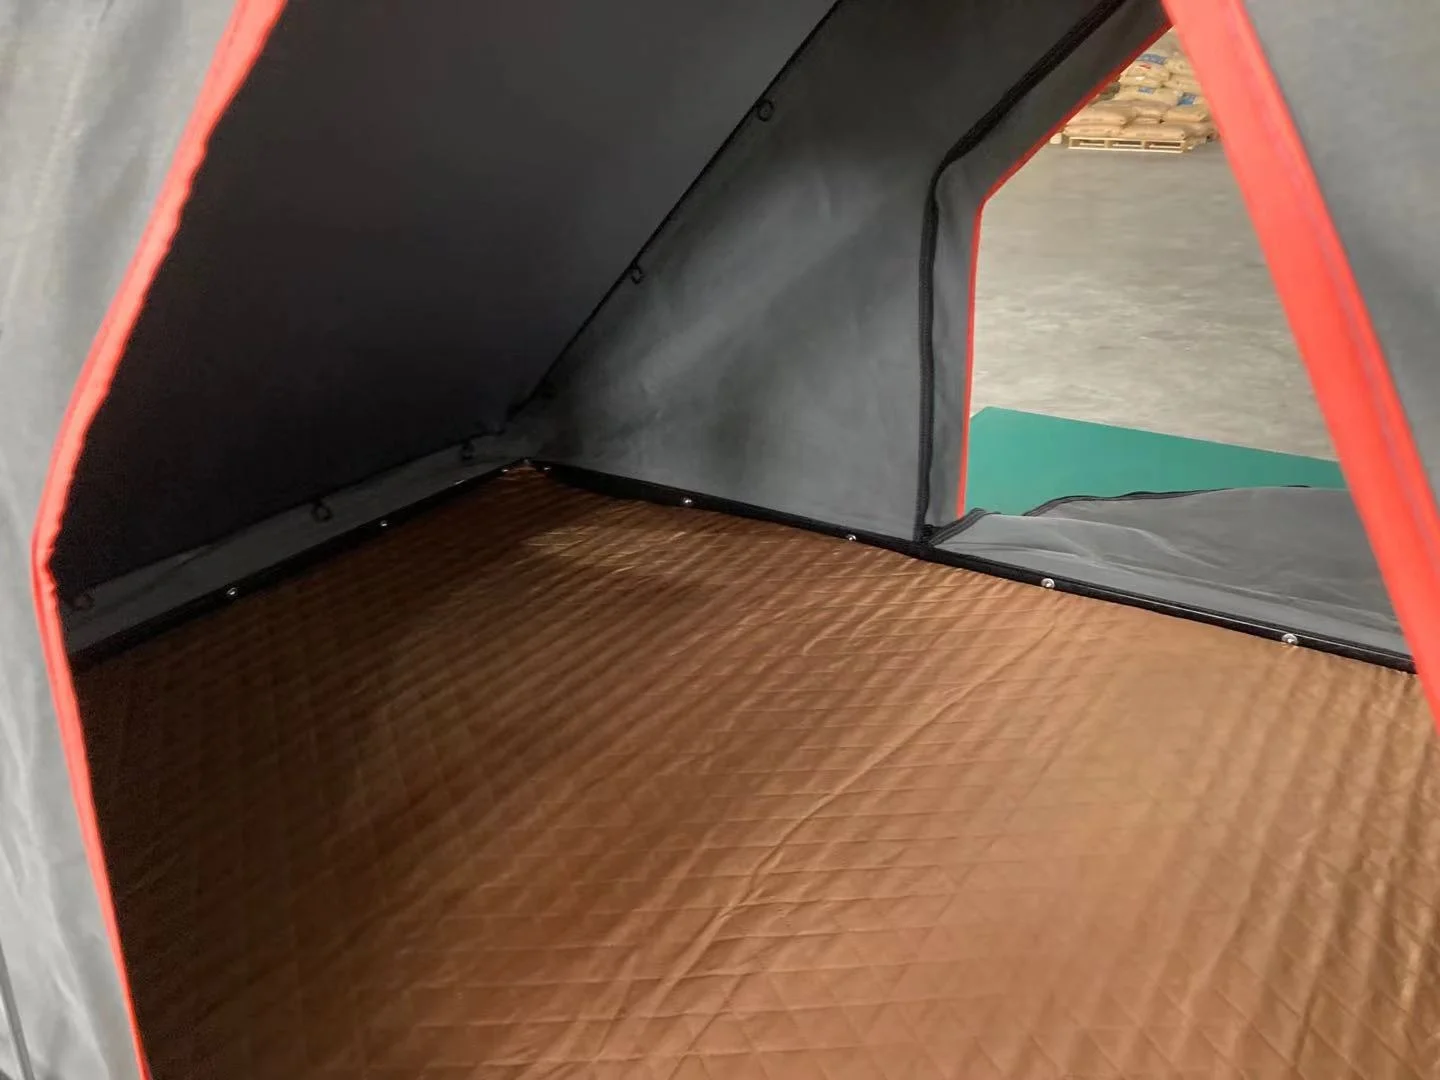 2022 Новое Поступление Tente de toit 4x4 Изготовленный на Заказ Треугольник Из Алюминиевого Сплава Кемпинг daktent Внедорожник Автомобиль Палатка На крыше твердая оболочка Палатка на крыше